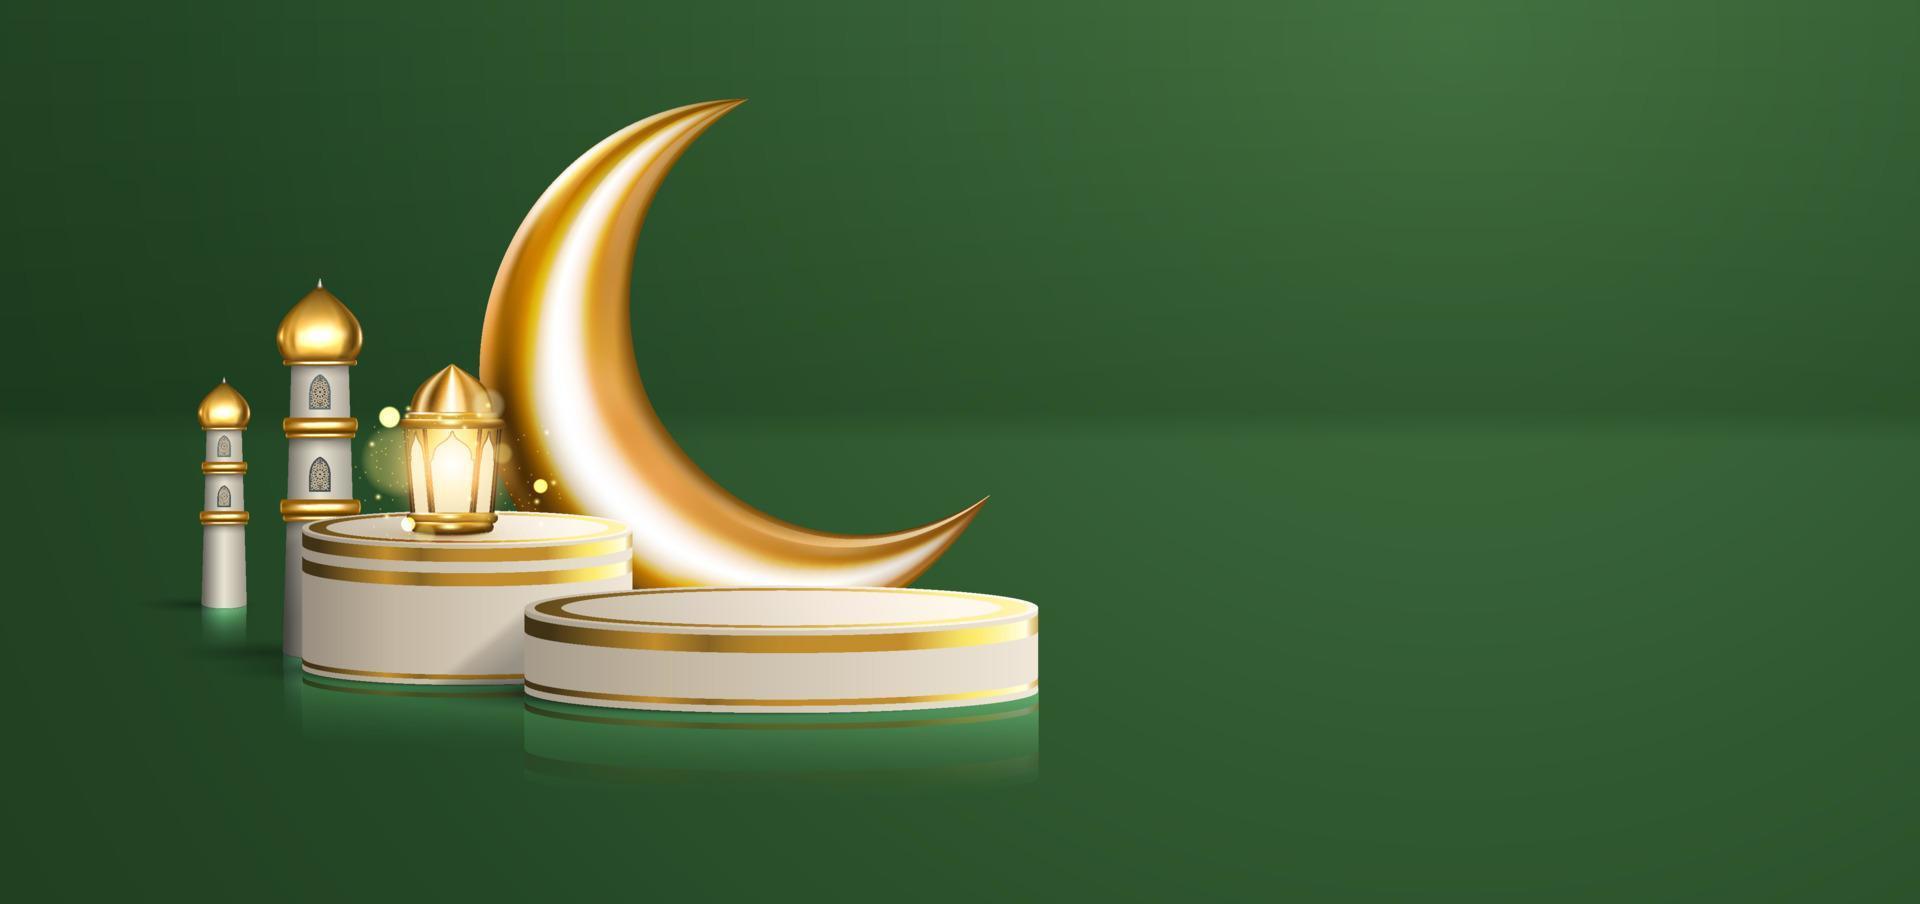 realistische 3d-islamische feier mit arabischer verzierung und produktpodium im grünen hintergrund. ramadan kareem illustration für werbung, verkauf, online-shopping und marketing vektor